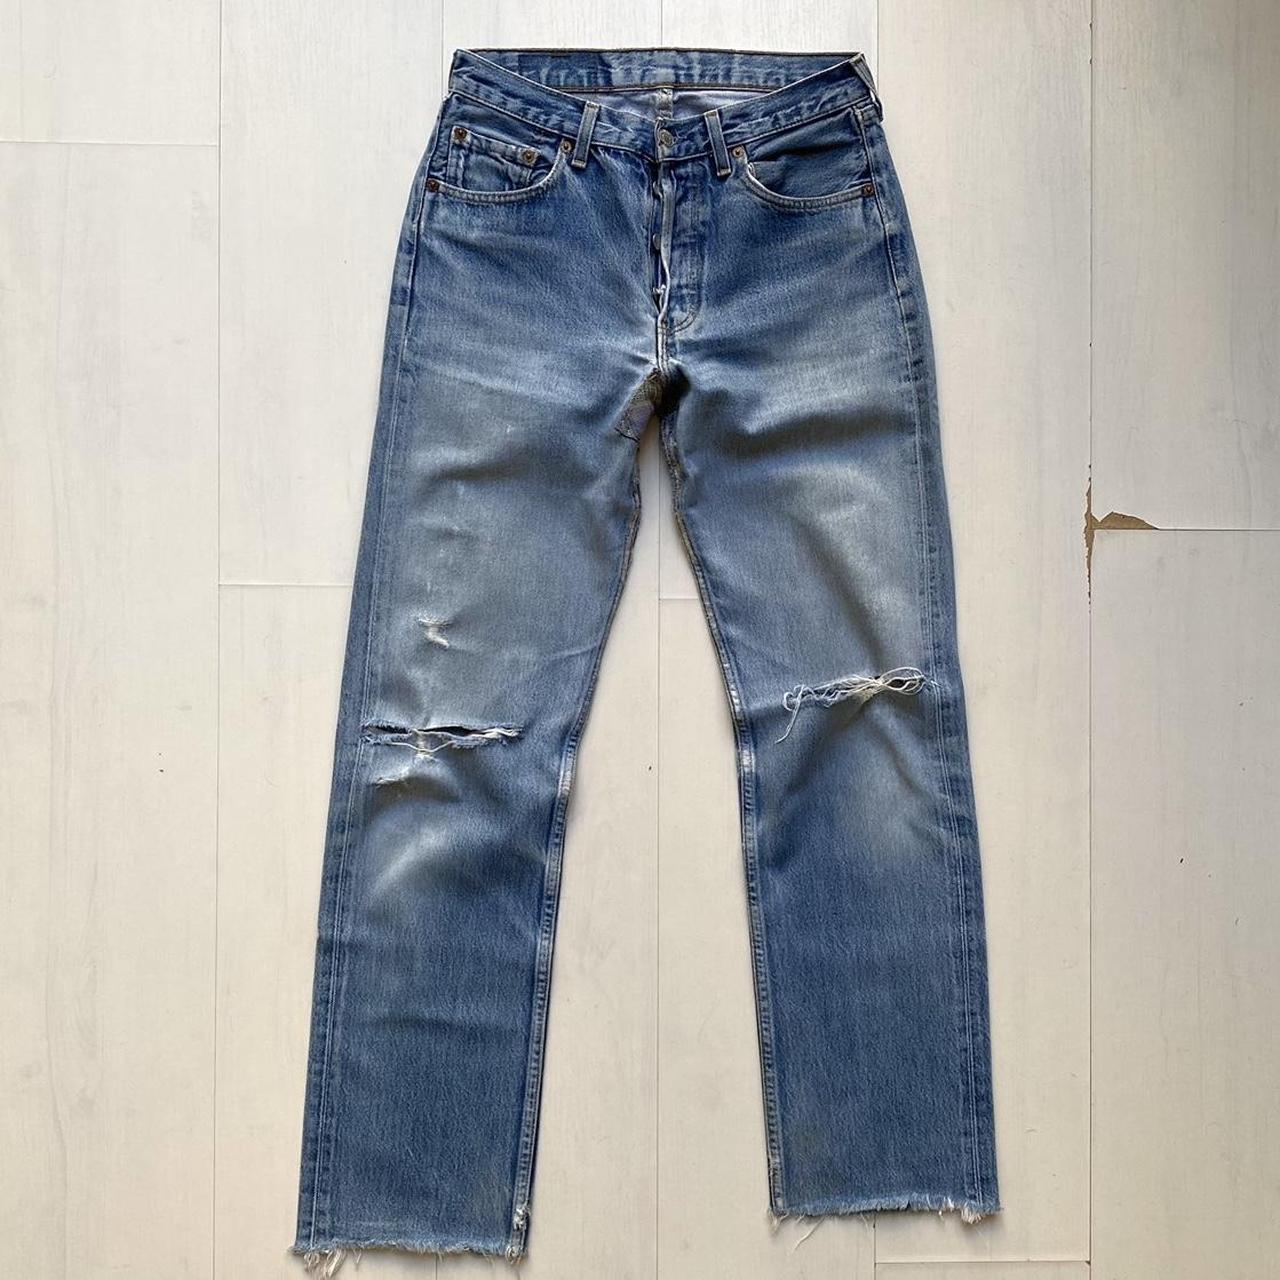 Vintage Levi’s 501 Distressed Jeans. Made in France... - Depop